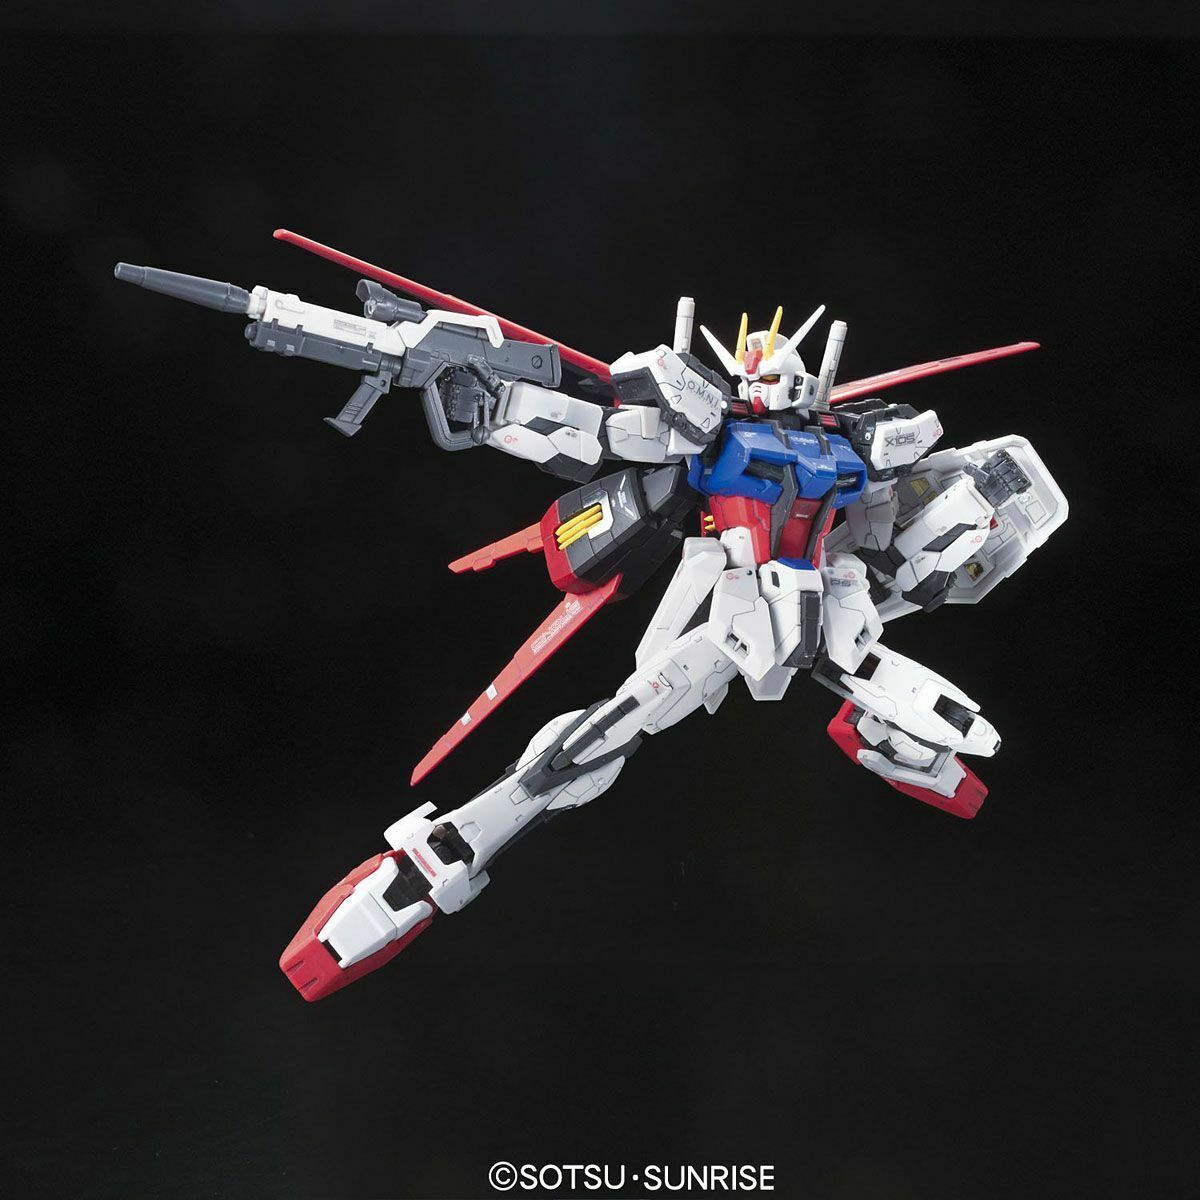 Bandai 1/144 Rg Aile Strike Gundam